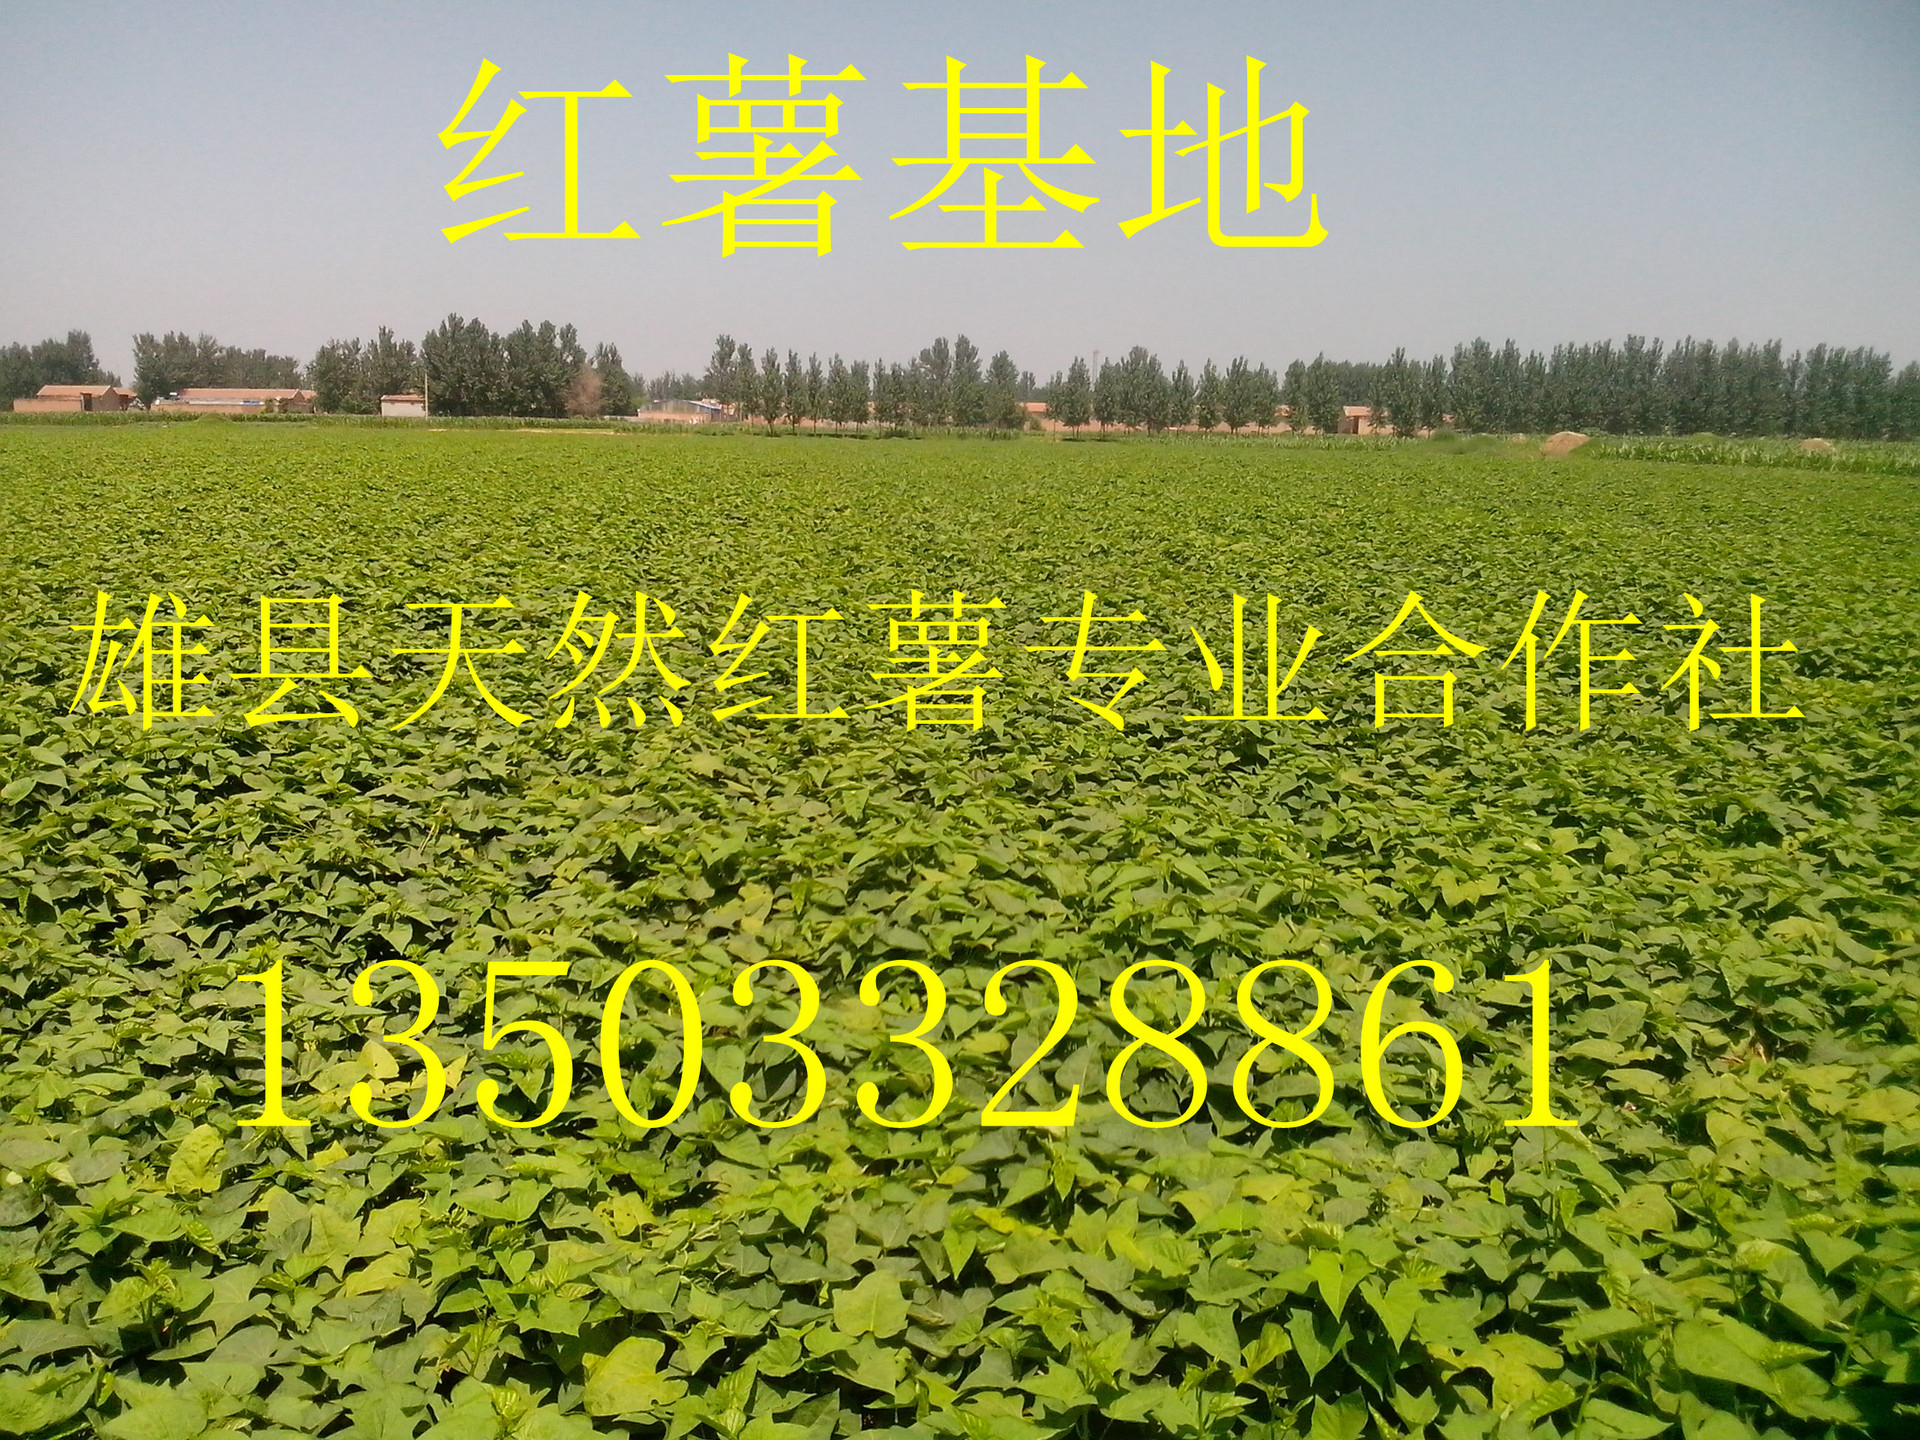 河北雄县早熟型龙薯九大量上市 上万亩红薯基地